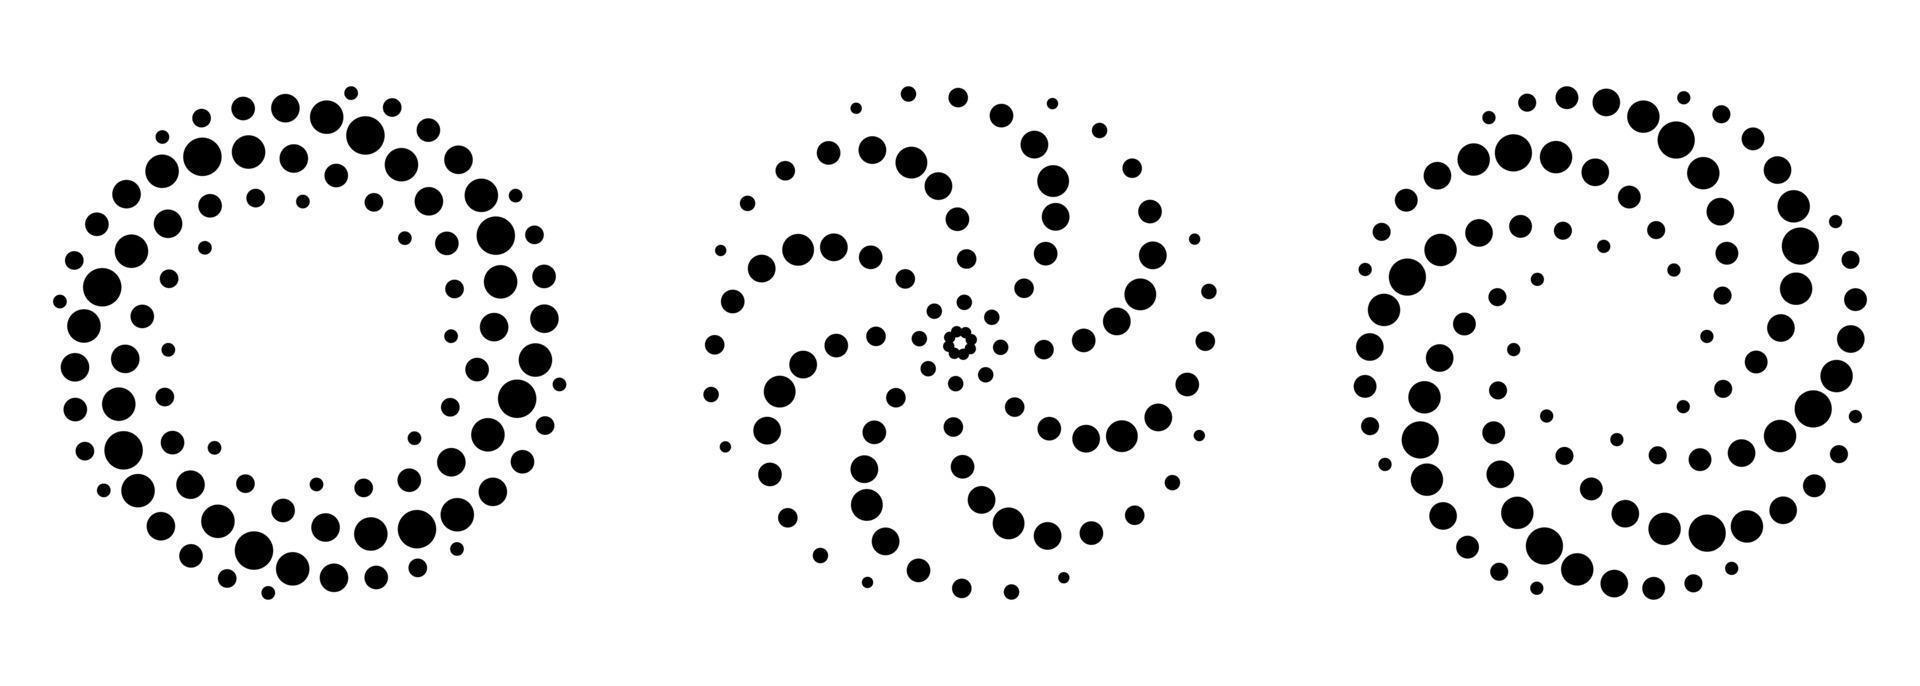 spiral halvtonsmönster set. svarta prickar i cirkel på vit bakgrund. rund virvel minimalistisk mall. snurra abstrakt modern design. vektor illustration.